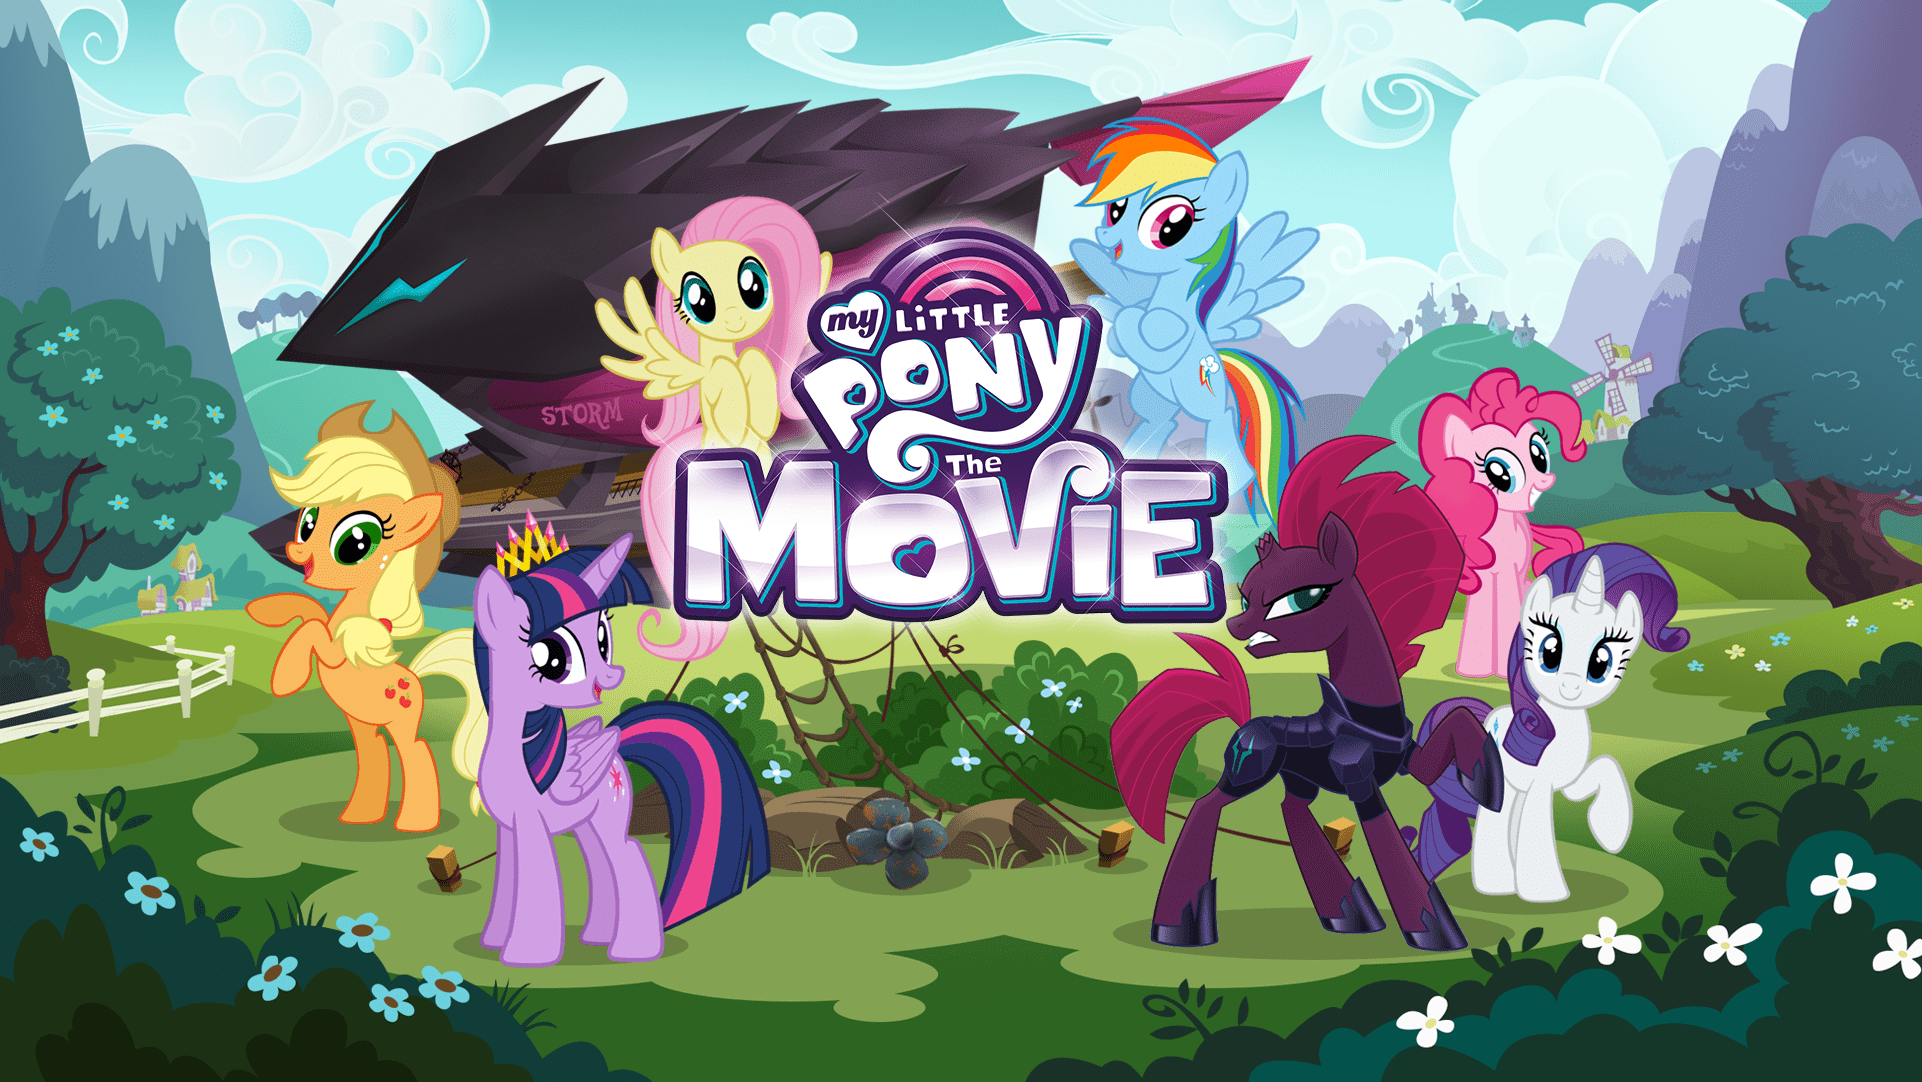 Пони игр 1. My little Pony магия принцесс игра. Игра my little Pony Gameloft. My little Pony игра 2012. My little Pony Gameloft пони.